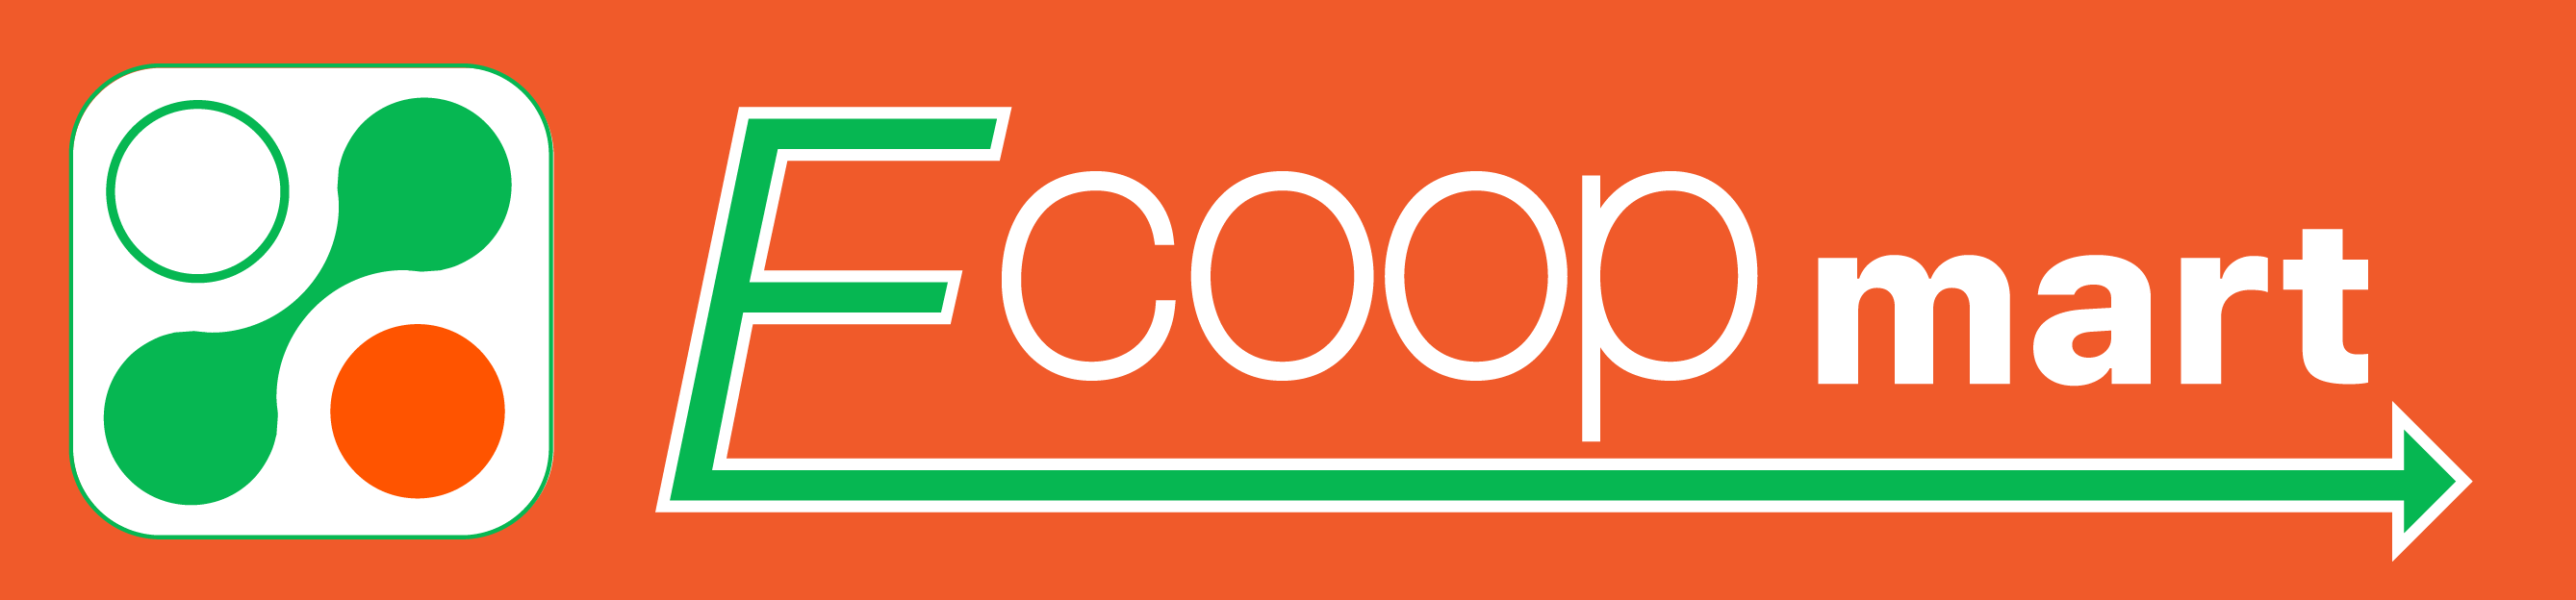 Ecoop Mart